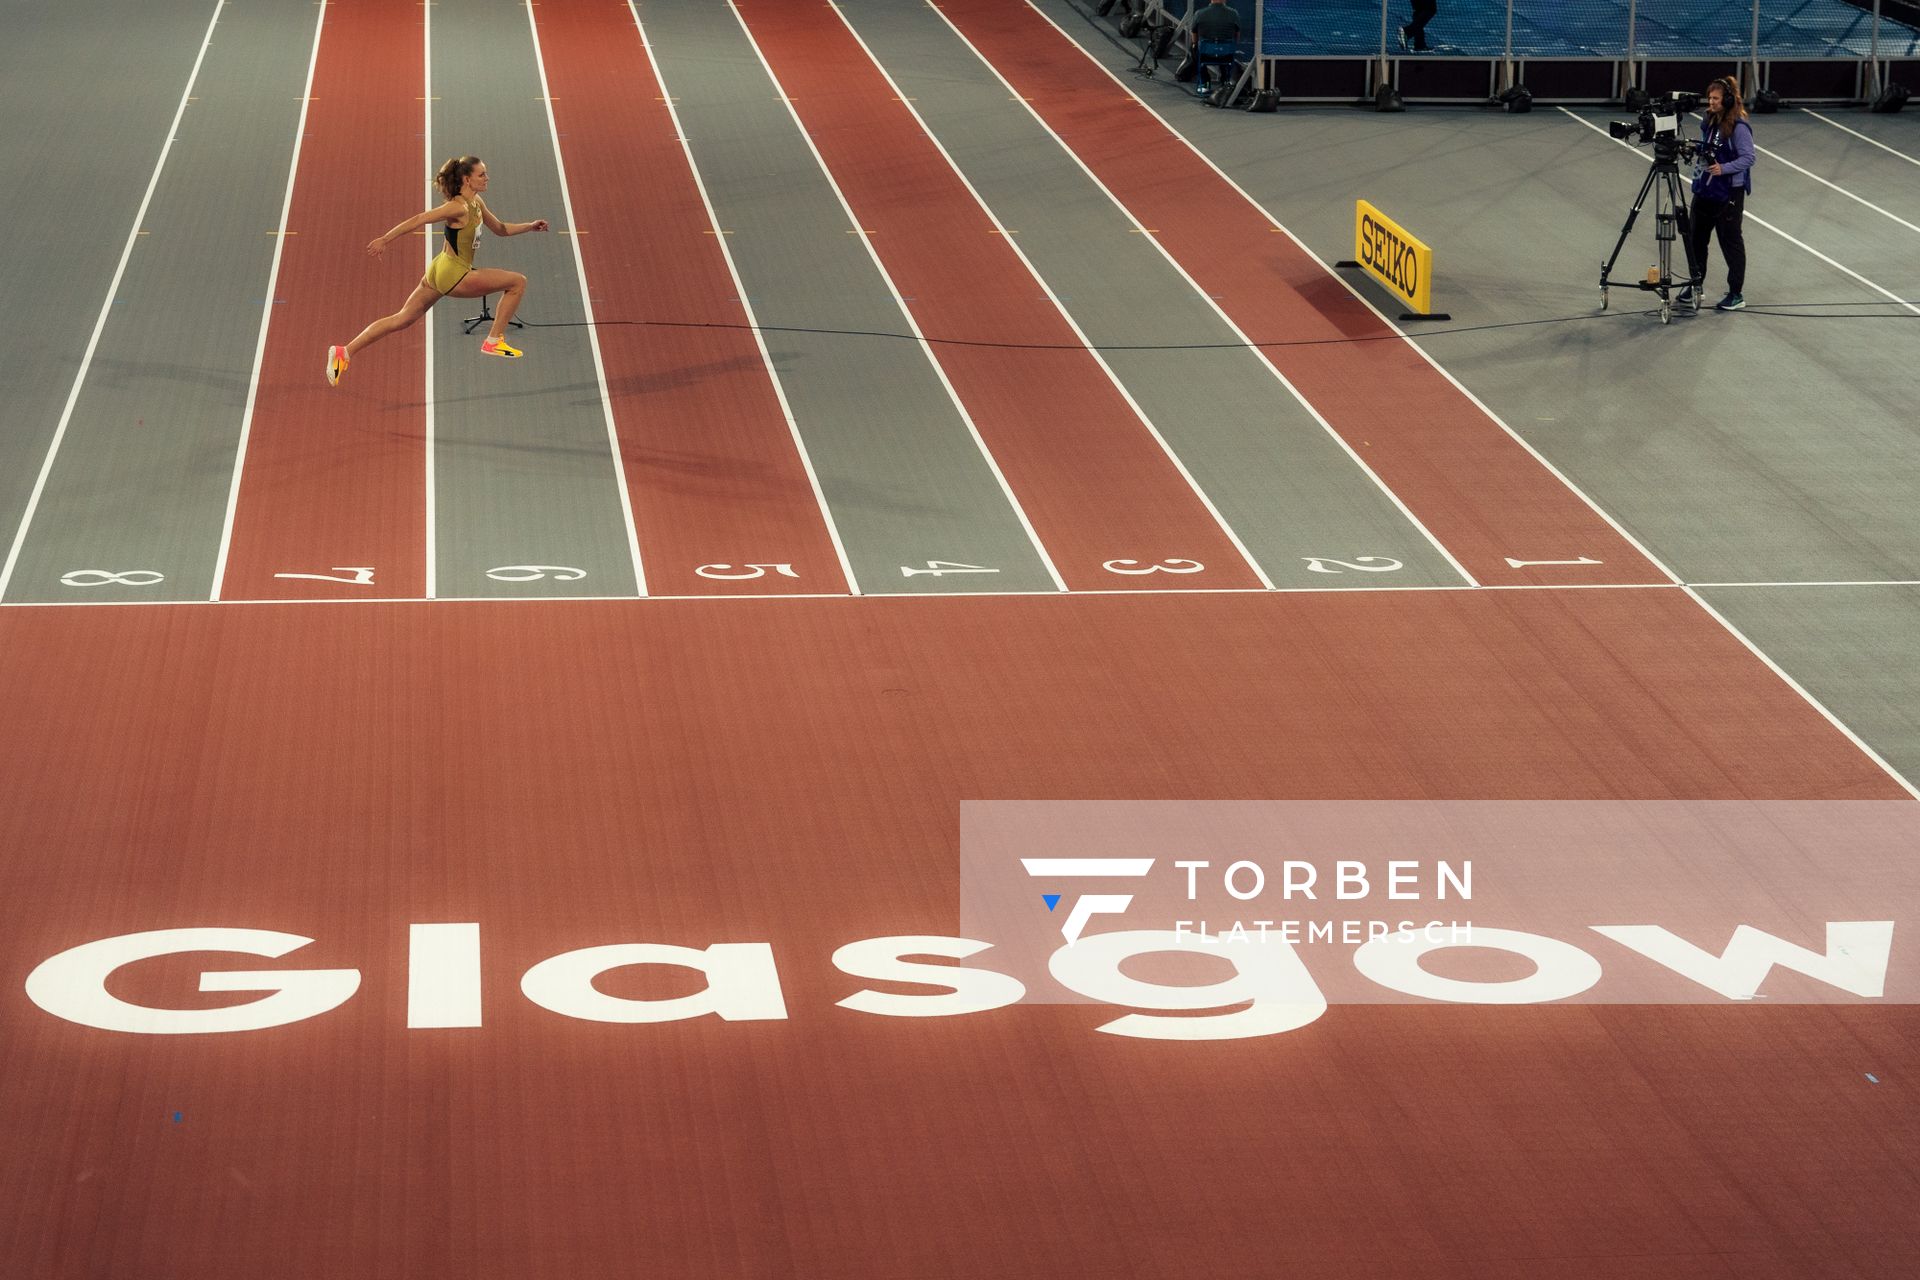 Christina Honsel (GER/Germany) im Hochsprung am 01.03.2024 bei den World Athletics Indoor Championships in Glasgow (Schottland / Vereinigtes Königreich)